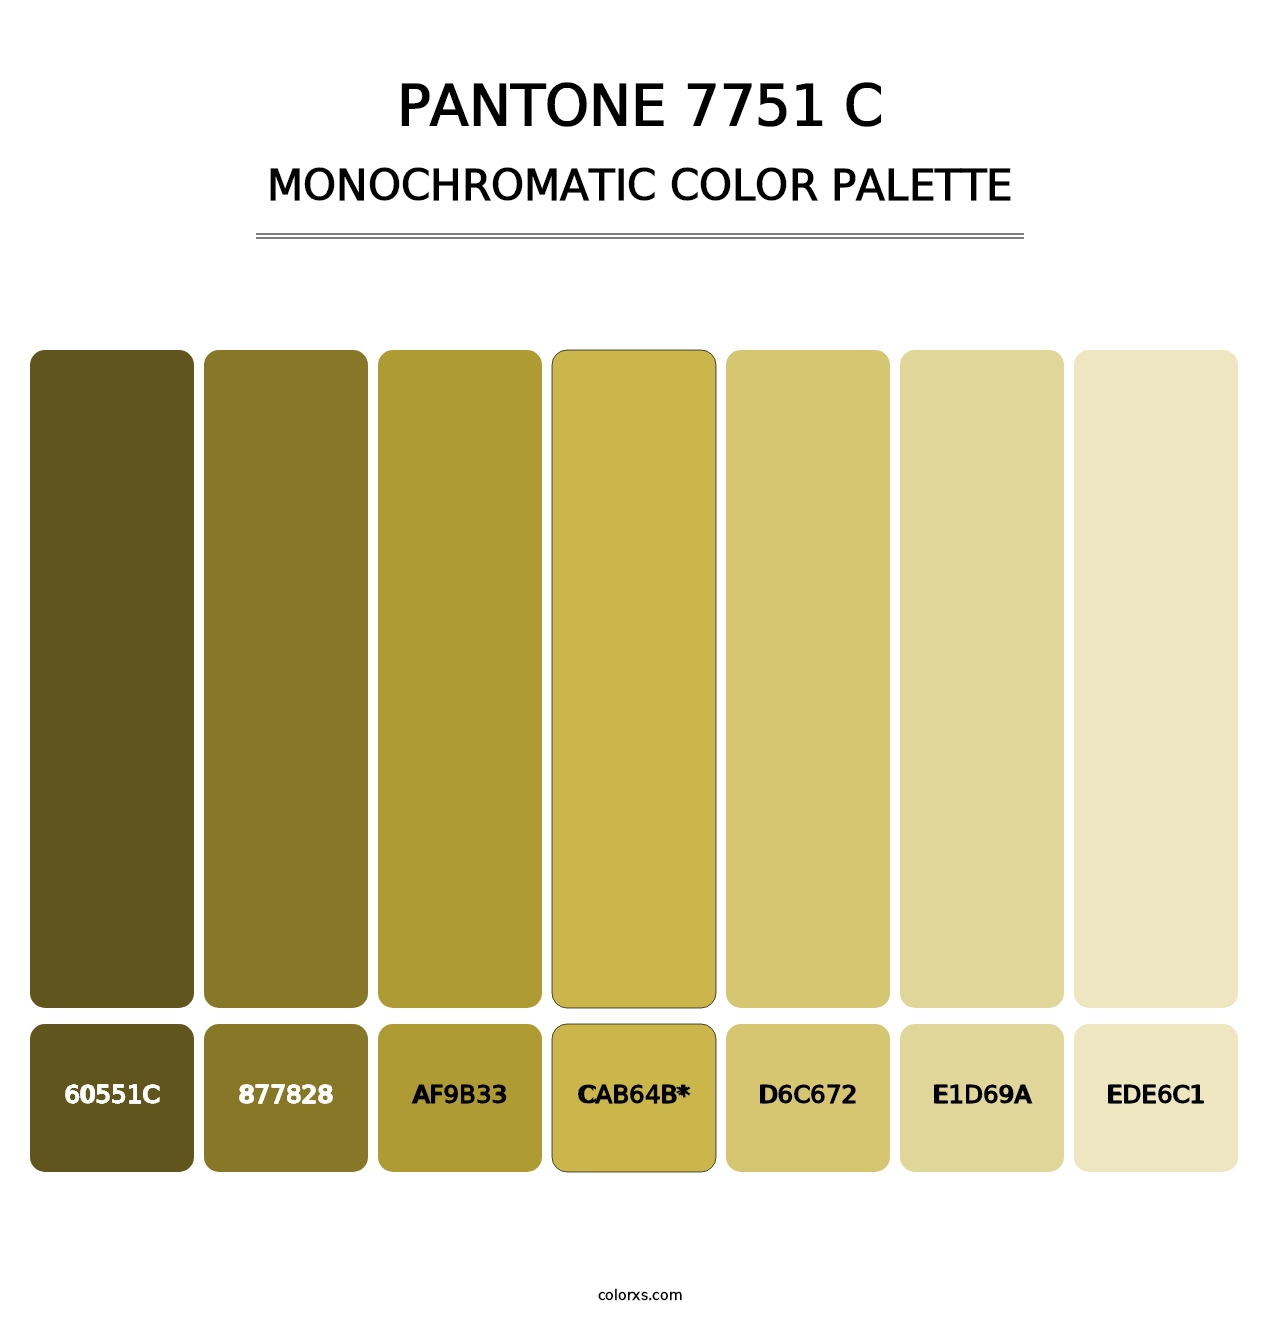 PANTONE 7751 C - Monochromatic Color Palette